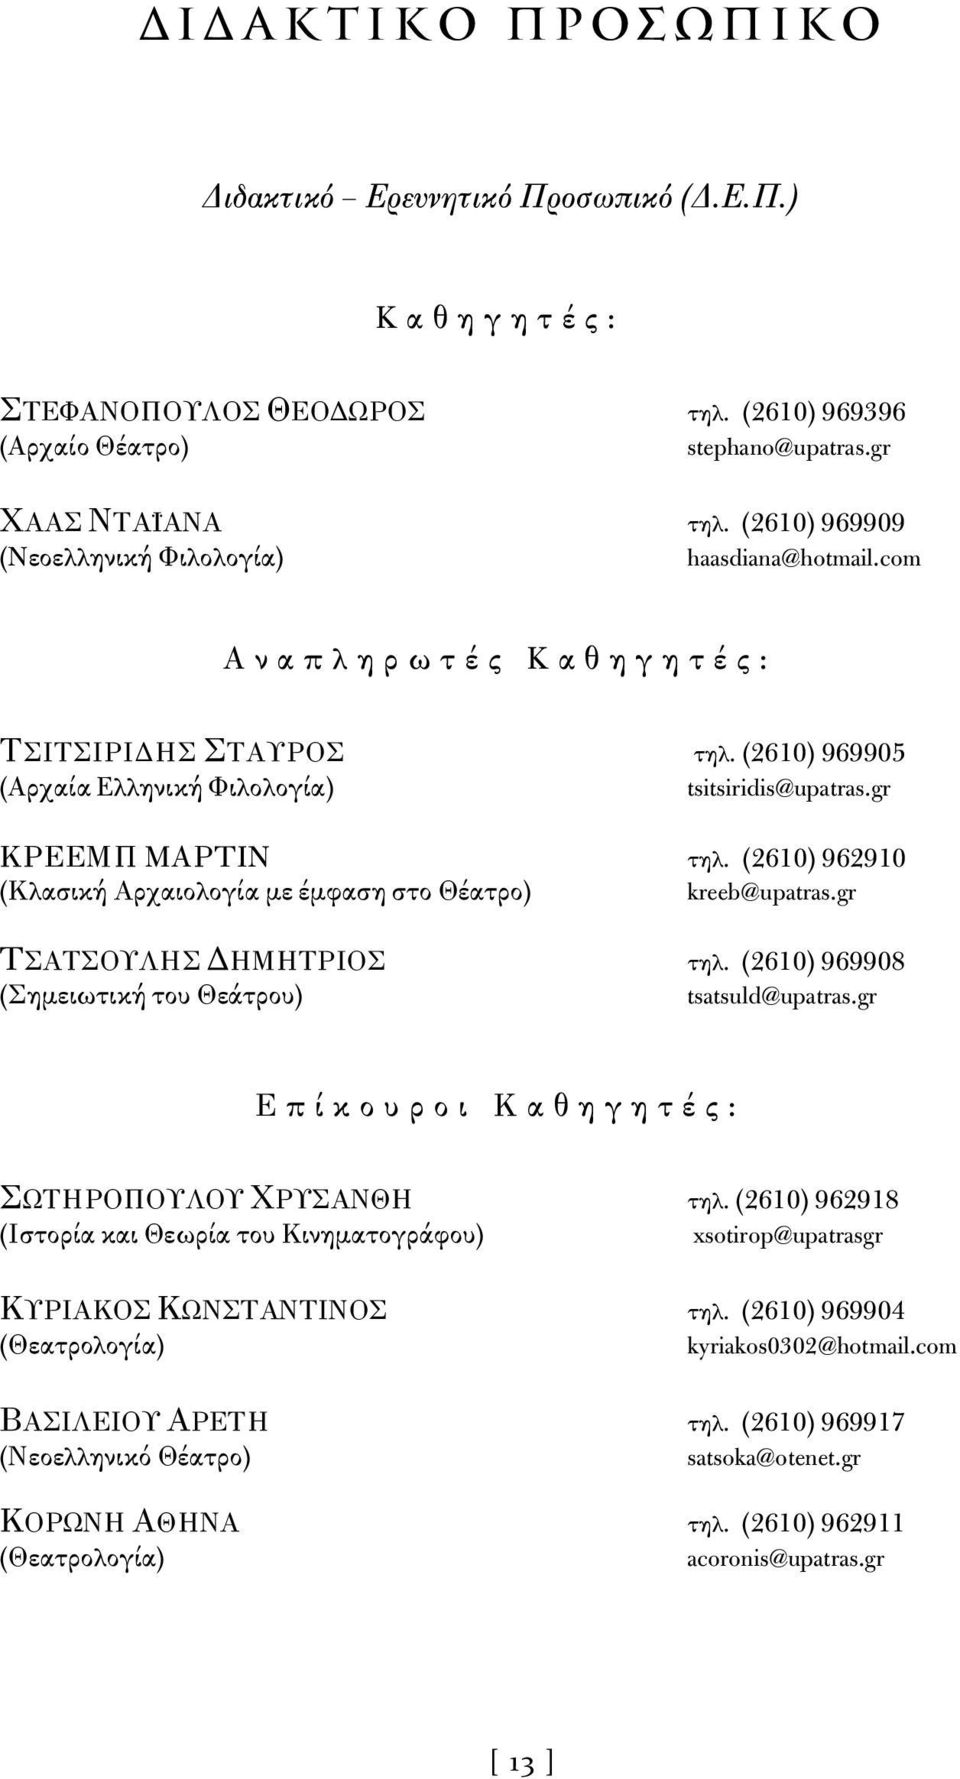 (2610) 962910 (Κλασική Αρχαιολογία με έμφαση στο Θέατρο) kreeb@upatras.gr TΣΑΤΣΟΥΛΗΣ ΔΗΜΗΤΡΙΟΣ τηλ. (2610) 969908 (Σημειωτική του Θεάτρου) tsatsuld@upatras.